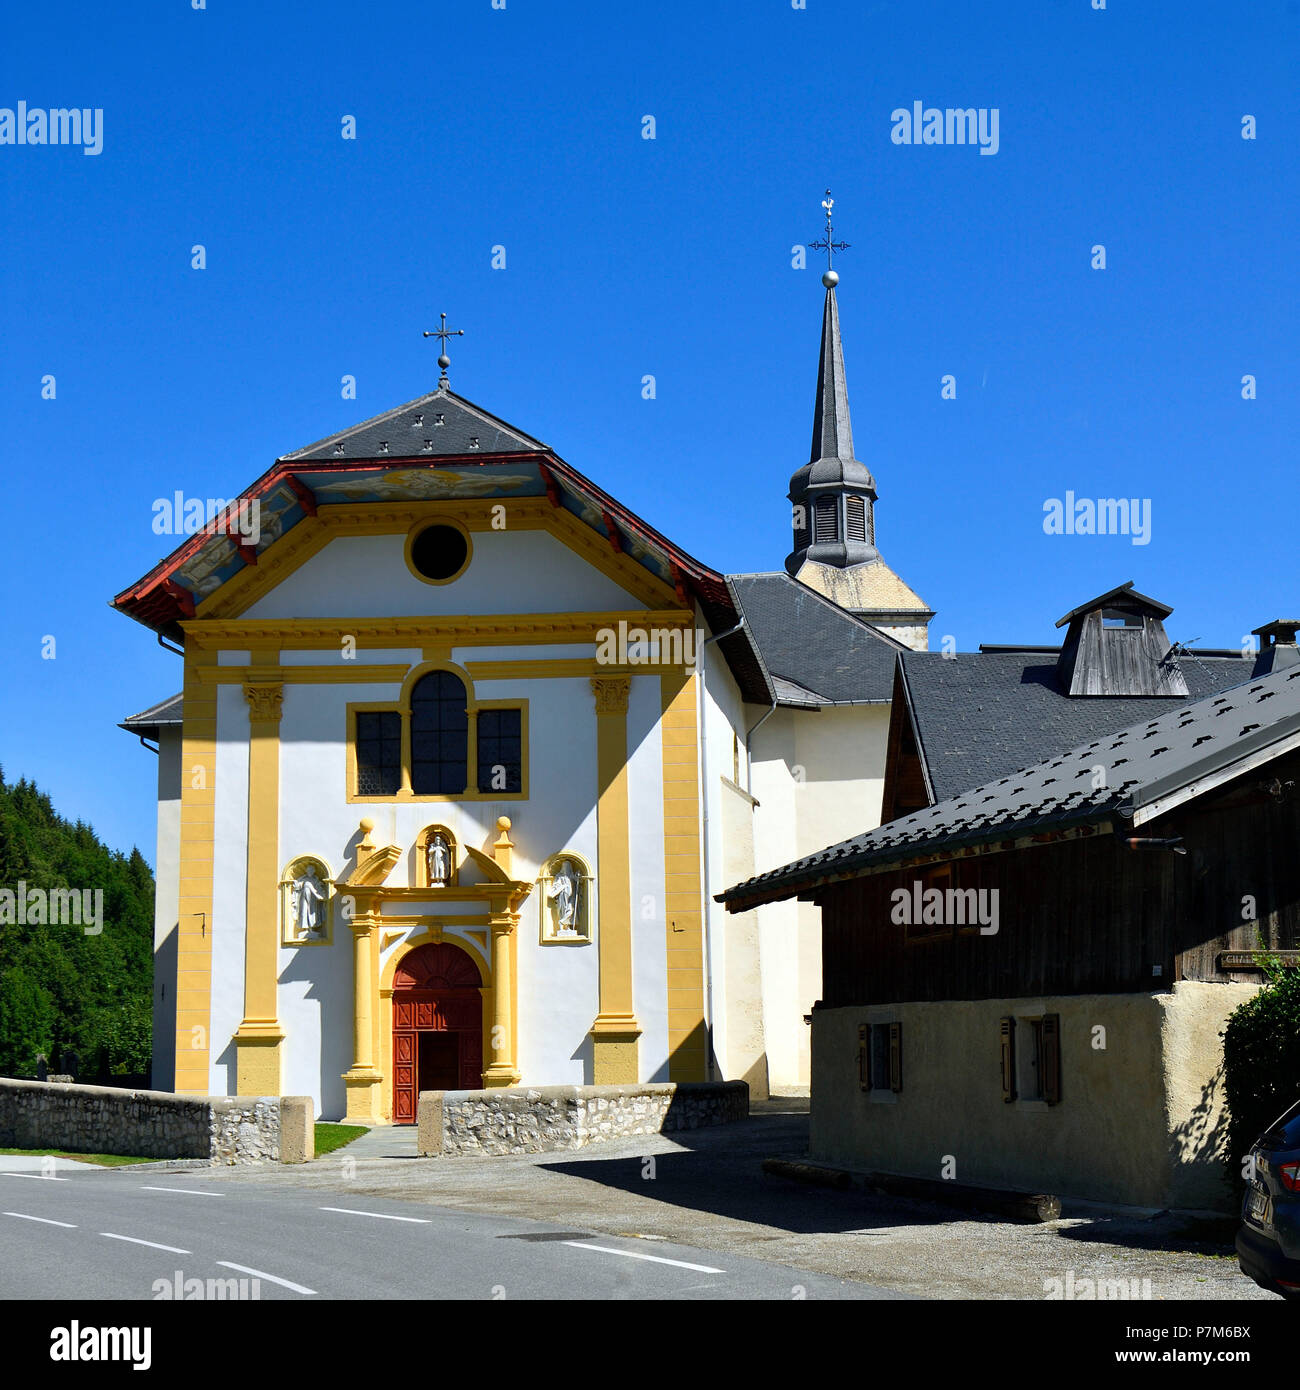 France, Haute Savoie, St Nicolas de Veroce, Les sentiers du baroque, l'église St Nicolas de Veroce Banque D'Images